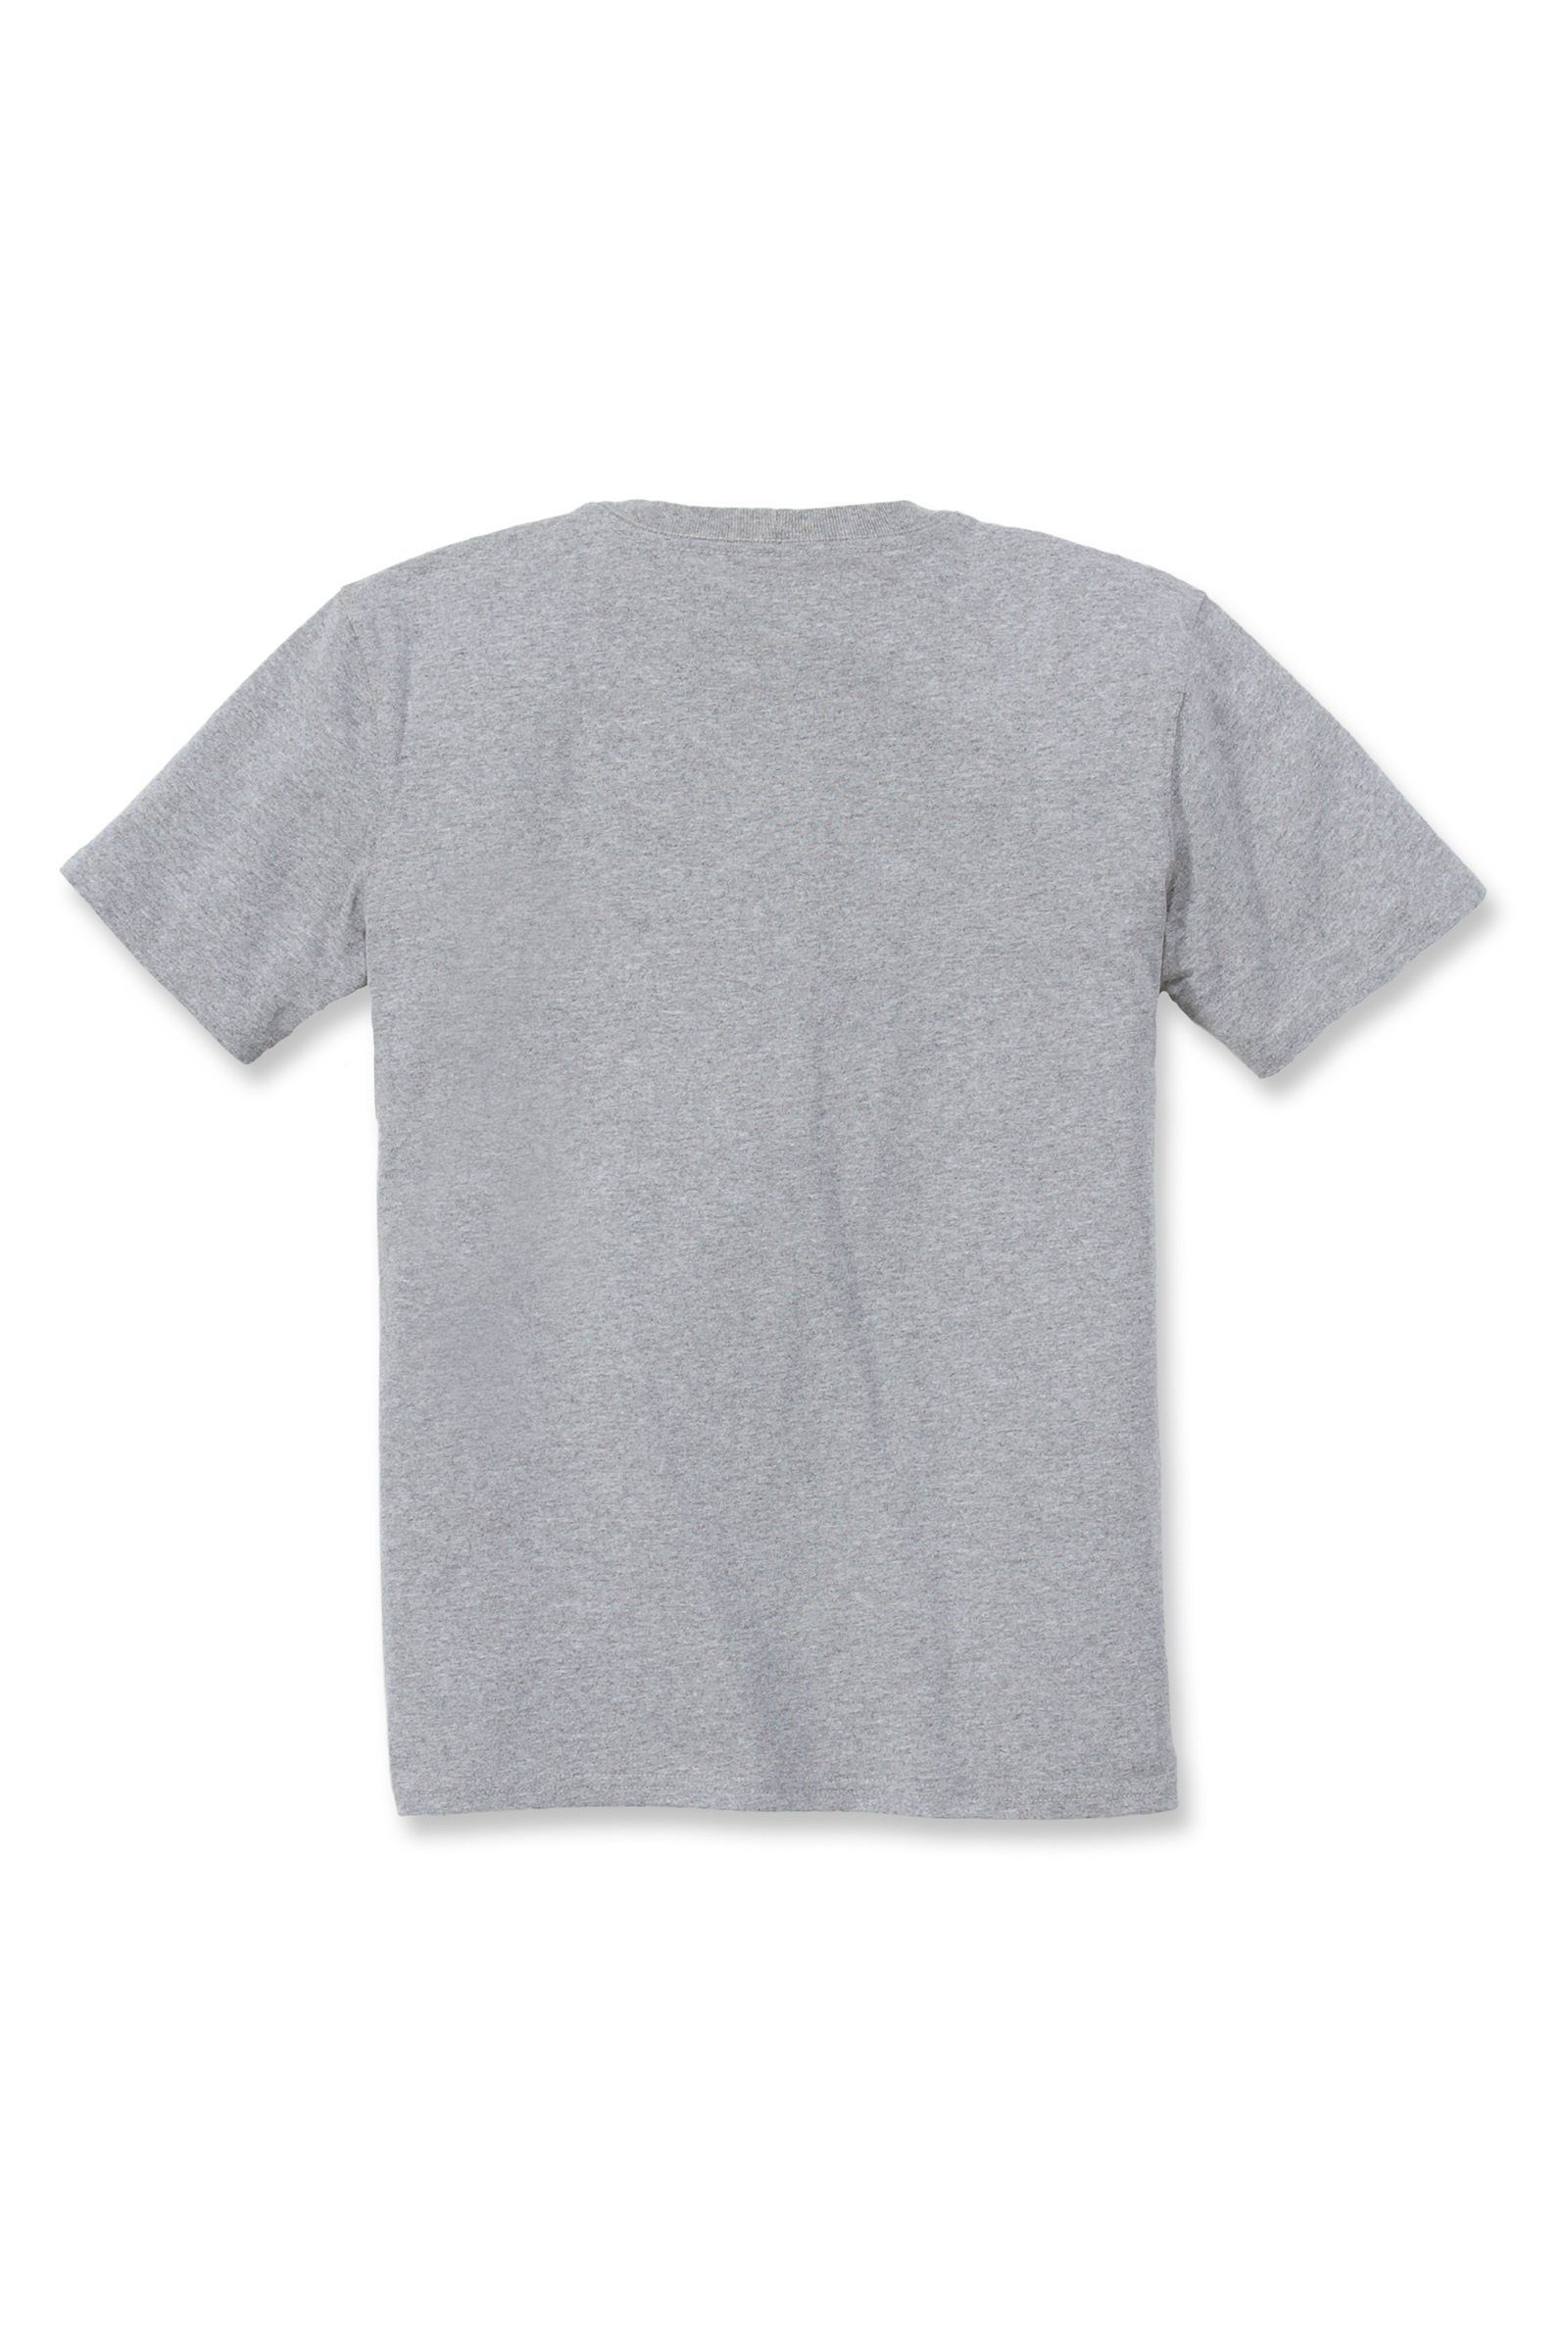 Carhartt T-Shirt Adult grey heather Damen Fit Carhartt Loose T-Shirt Short-Sleeve Pocket Heavyweight